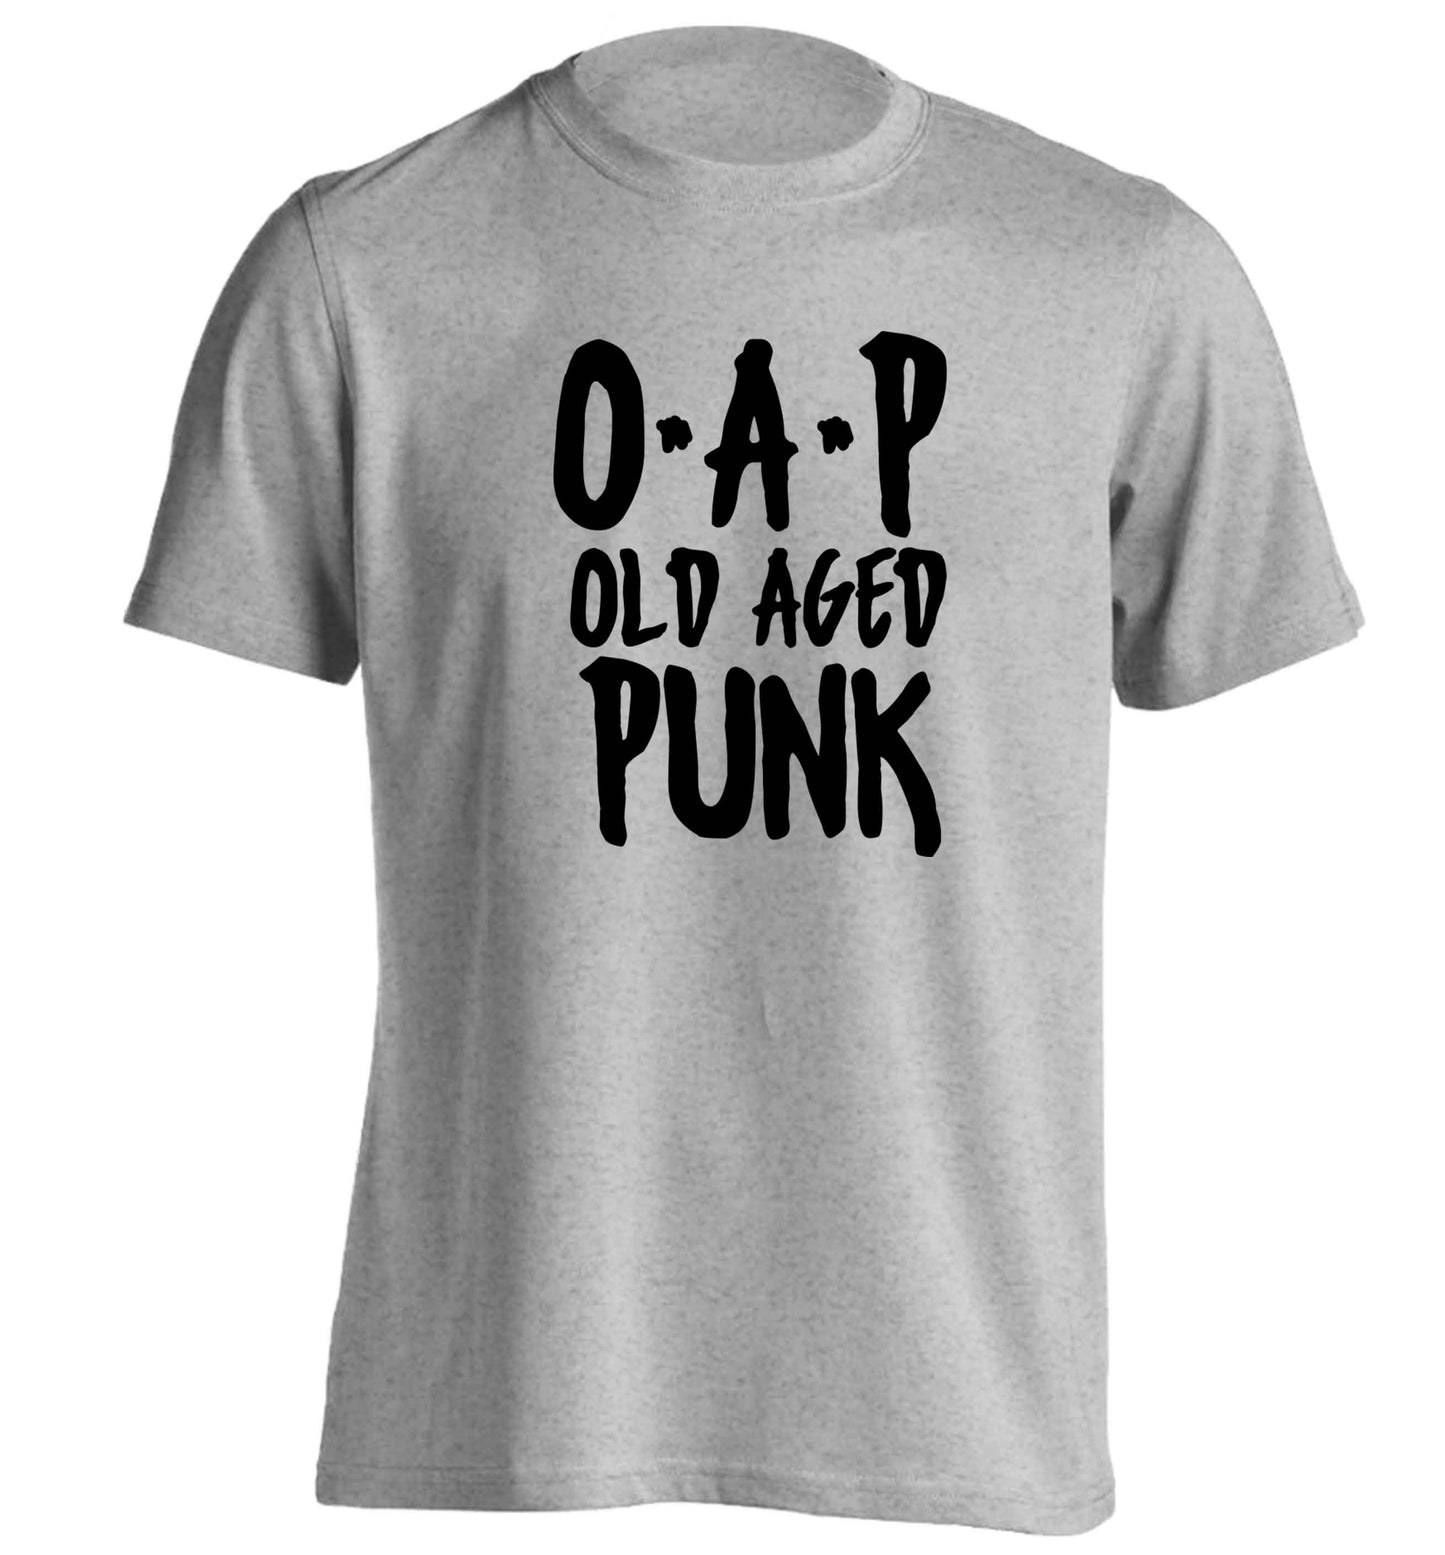 O.A.P Old Age Punk adults unisex grey Tshirt 2XL